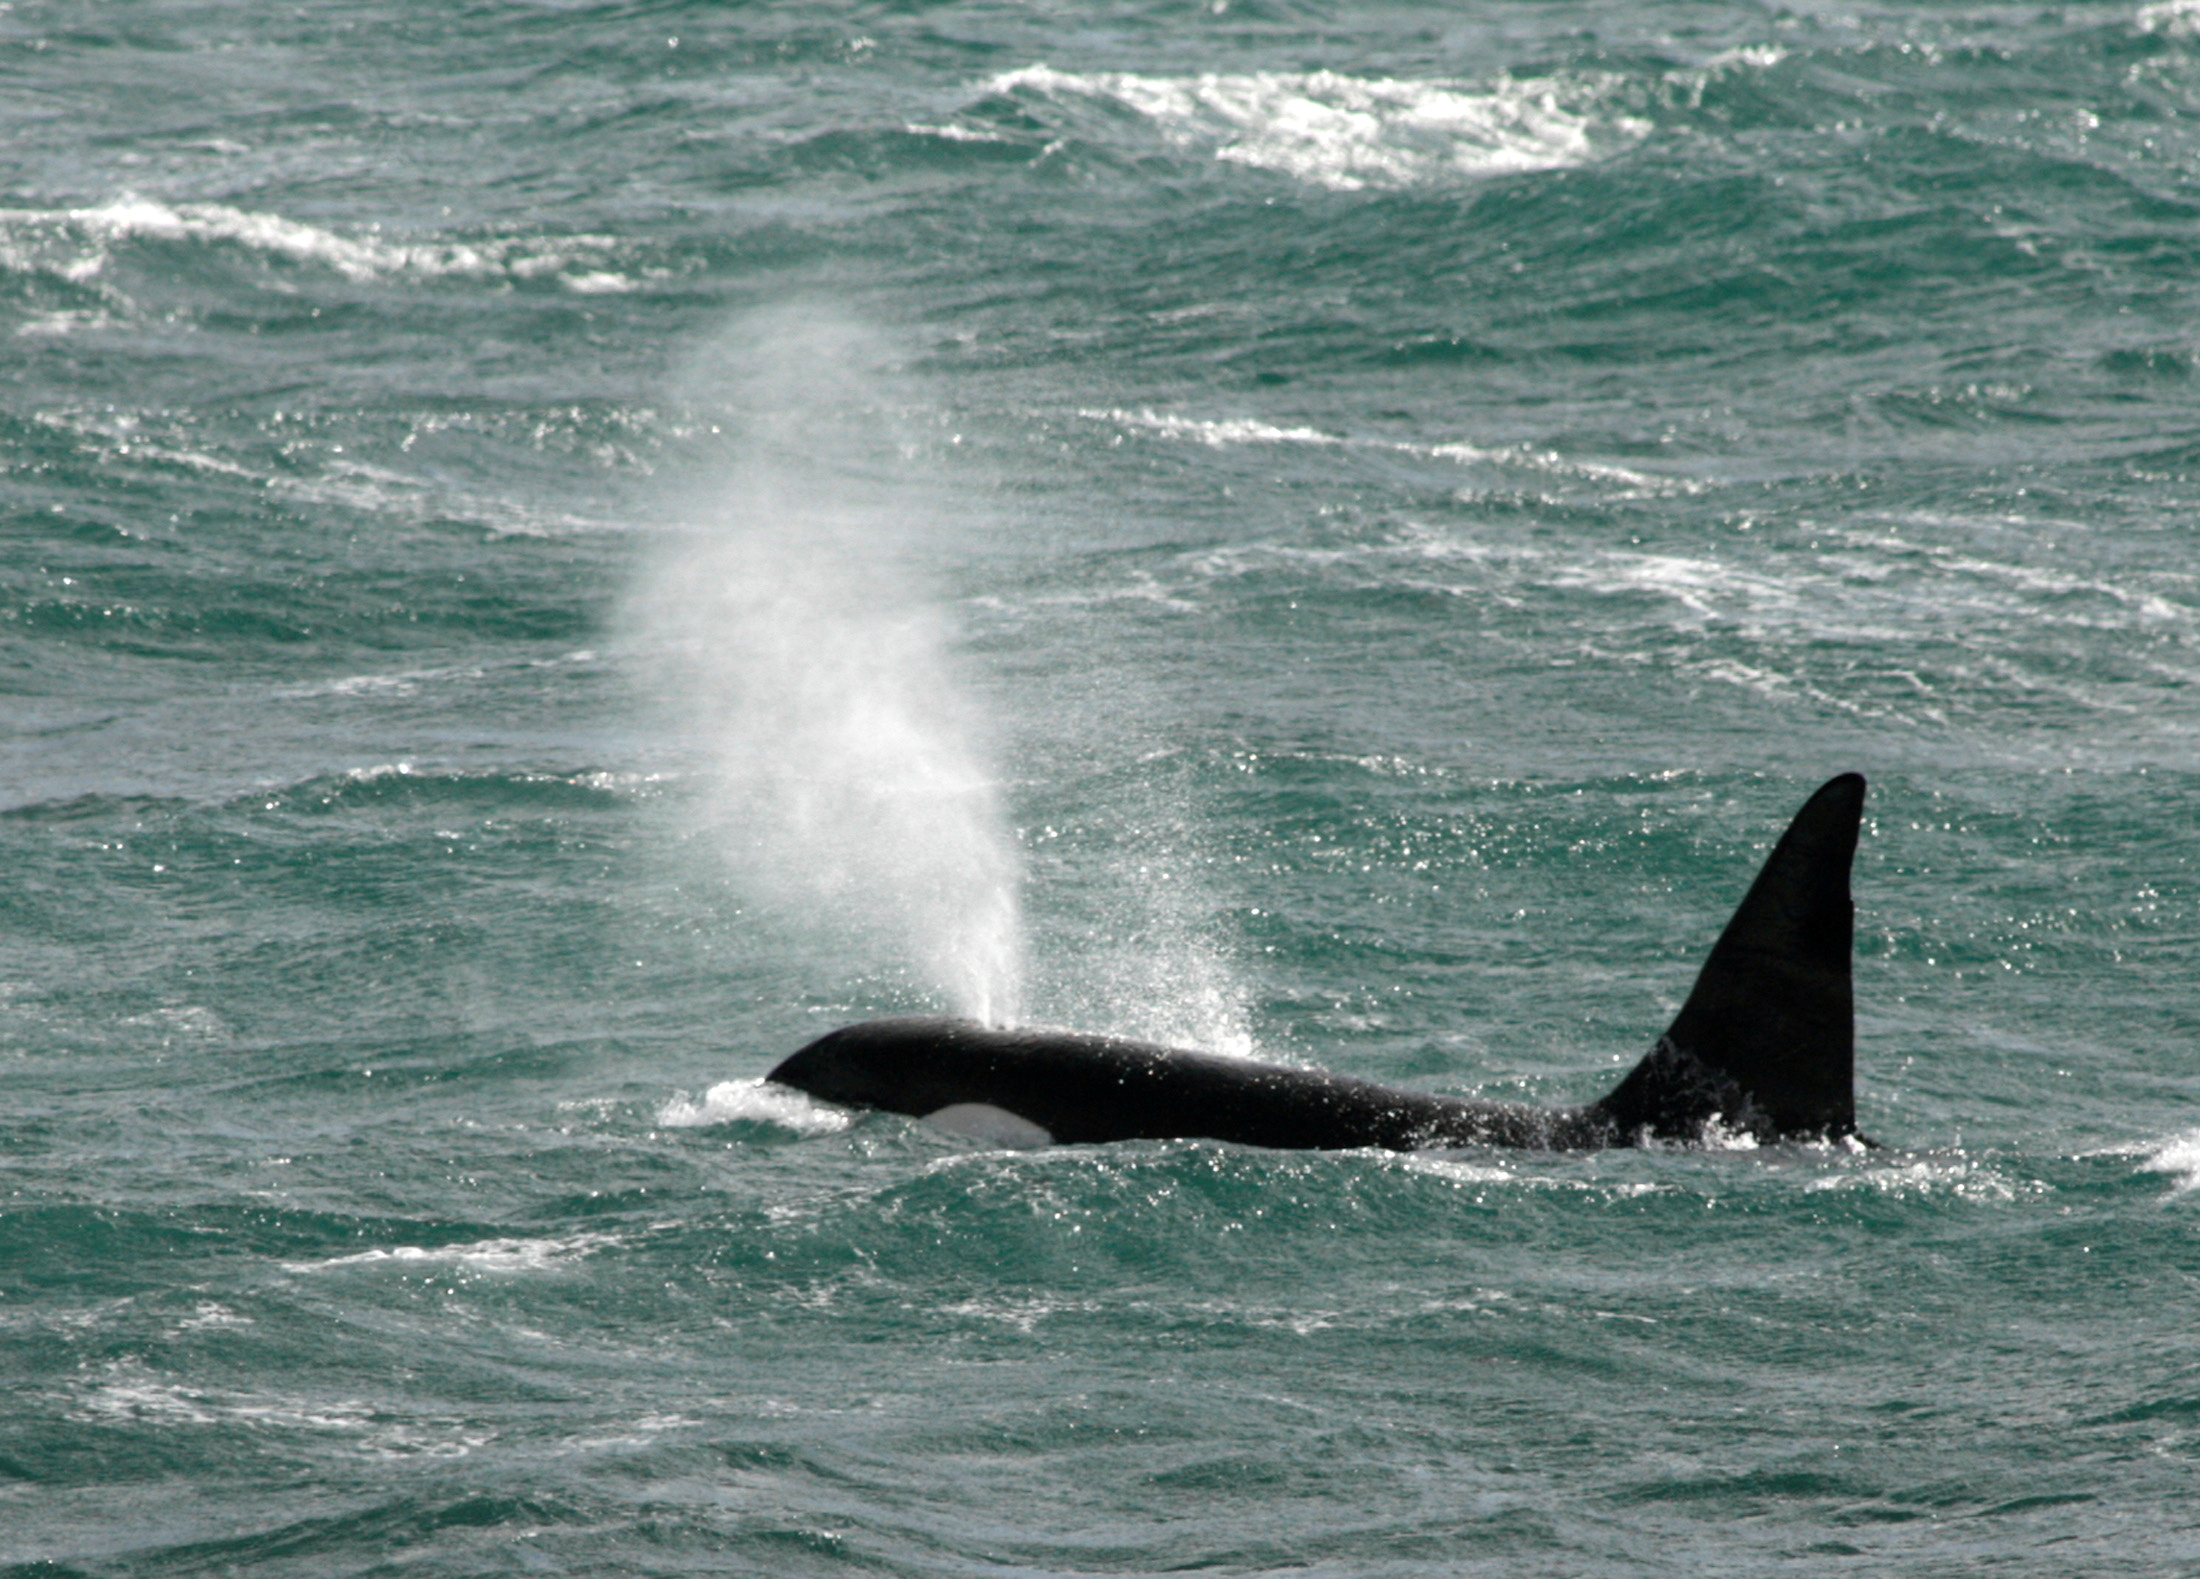 FOTO DE ARCHIVO. Fue el episodio más reciente de una desconcertante tendencia en el comportamiento de las orcas  (REUTERS/Enrique Marcarian/File Photo)